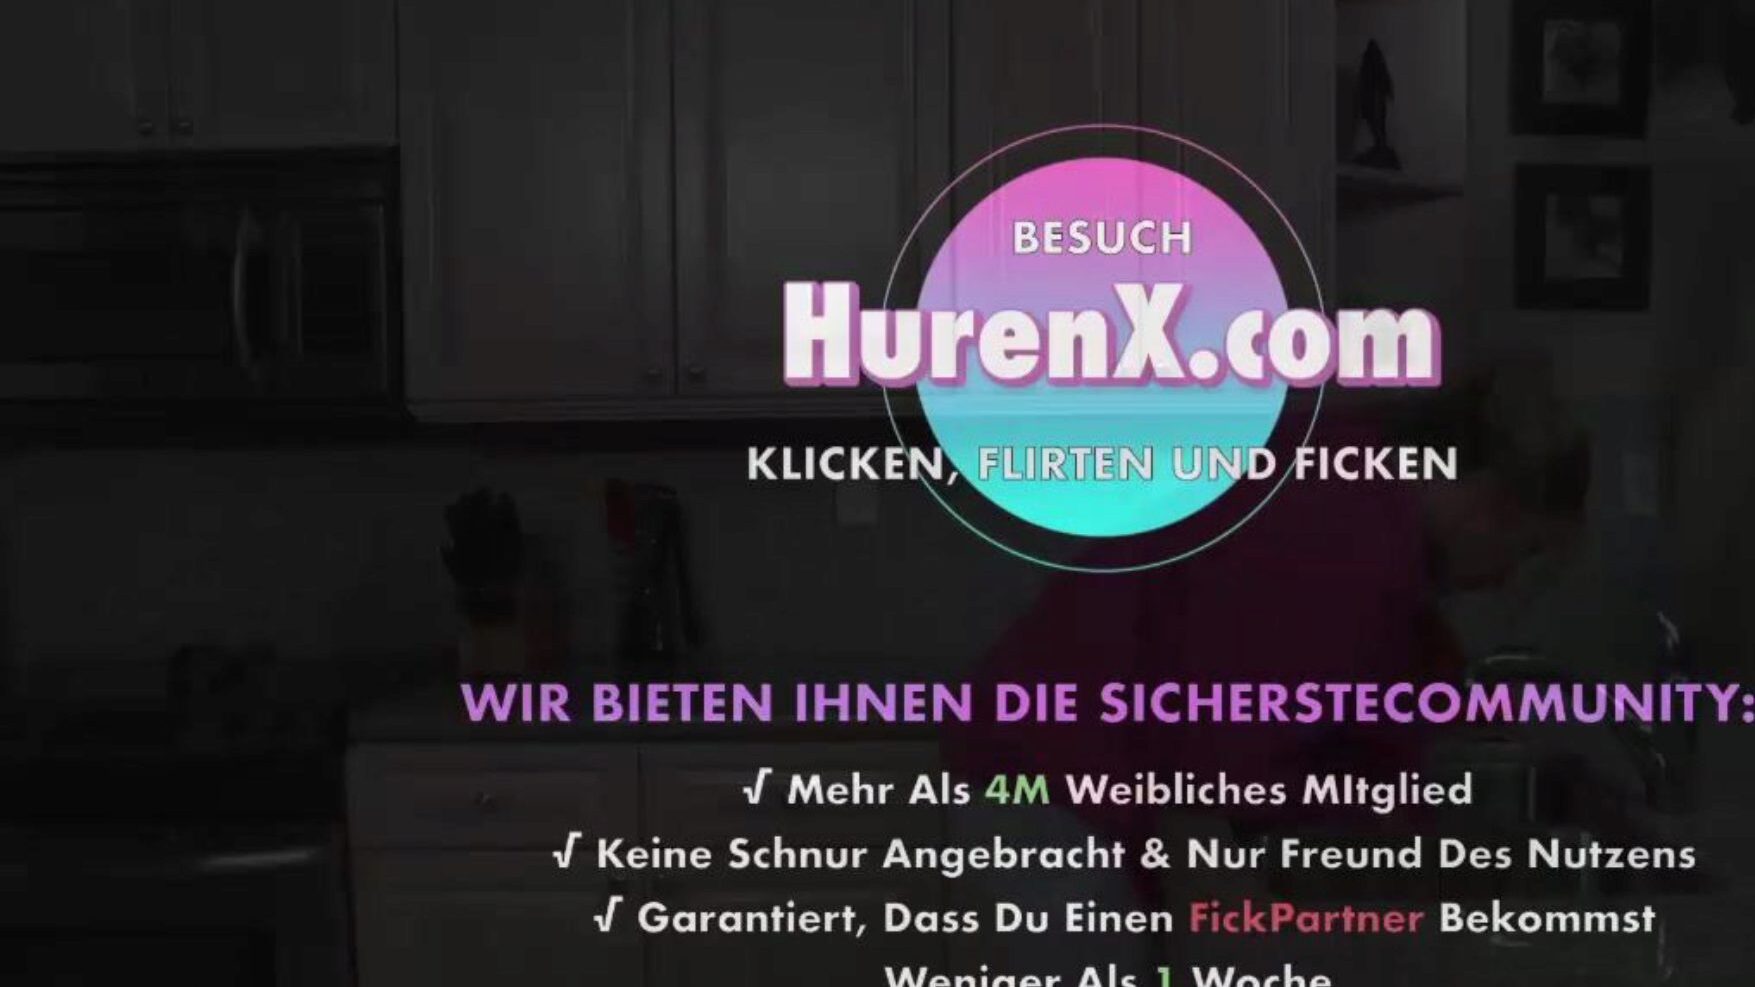 stiefmutter will meine hilfe, gratis xnxc porno b5: xhamster se stiefmutter will meine hilfe filmscene på xhamster, det største hd-fuck-fest-websted med masser af gratis tyske xnxc & mumler tyske pornografiklip